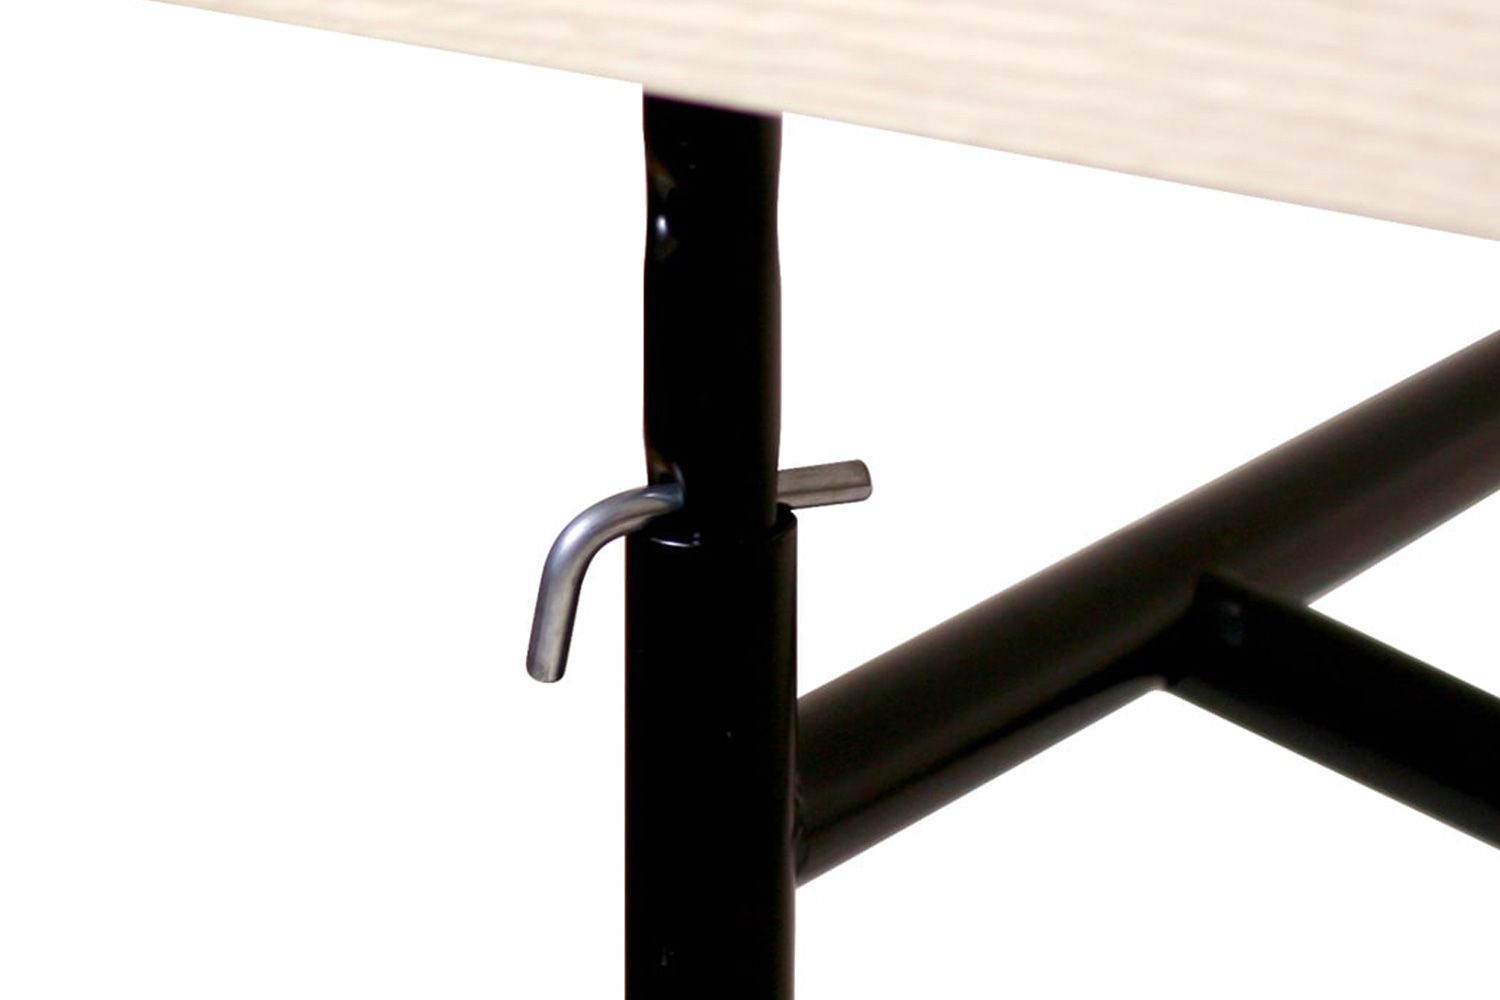 リチャード ランパート アイアーマン テーブル リノリウム ぺブルグレー 120 / 140 / 160cm 可動パイプを上下させ、L字金具を差し込むだけで、天板の高さを変更できる昇降テーブルです。